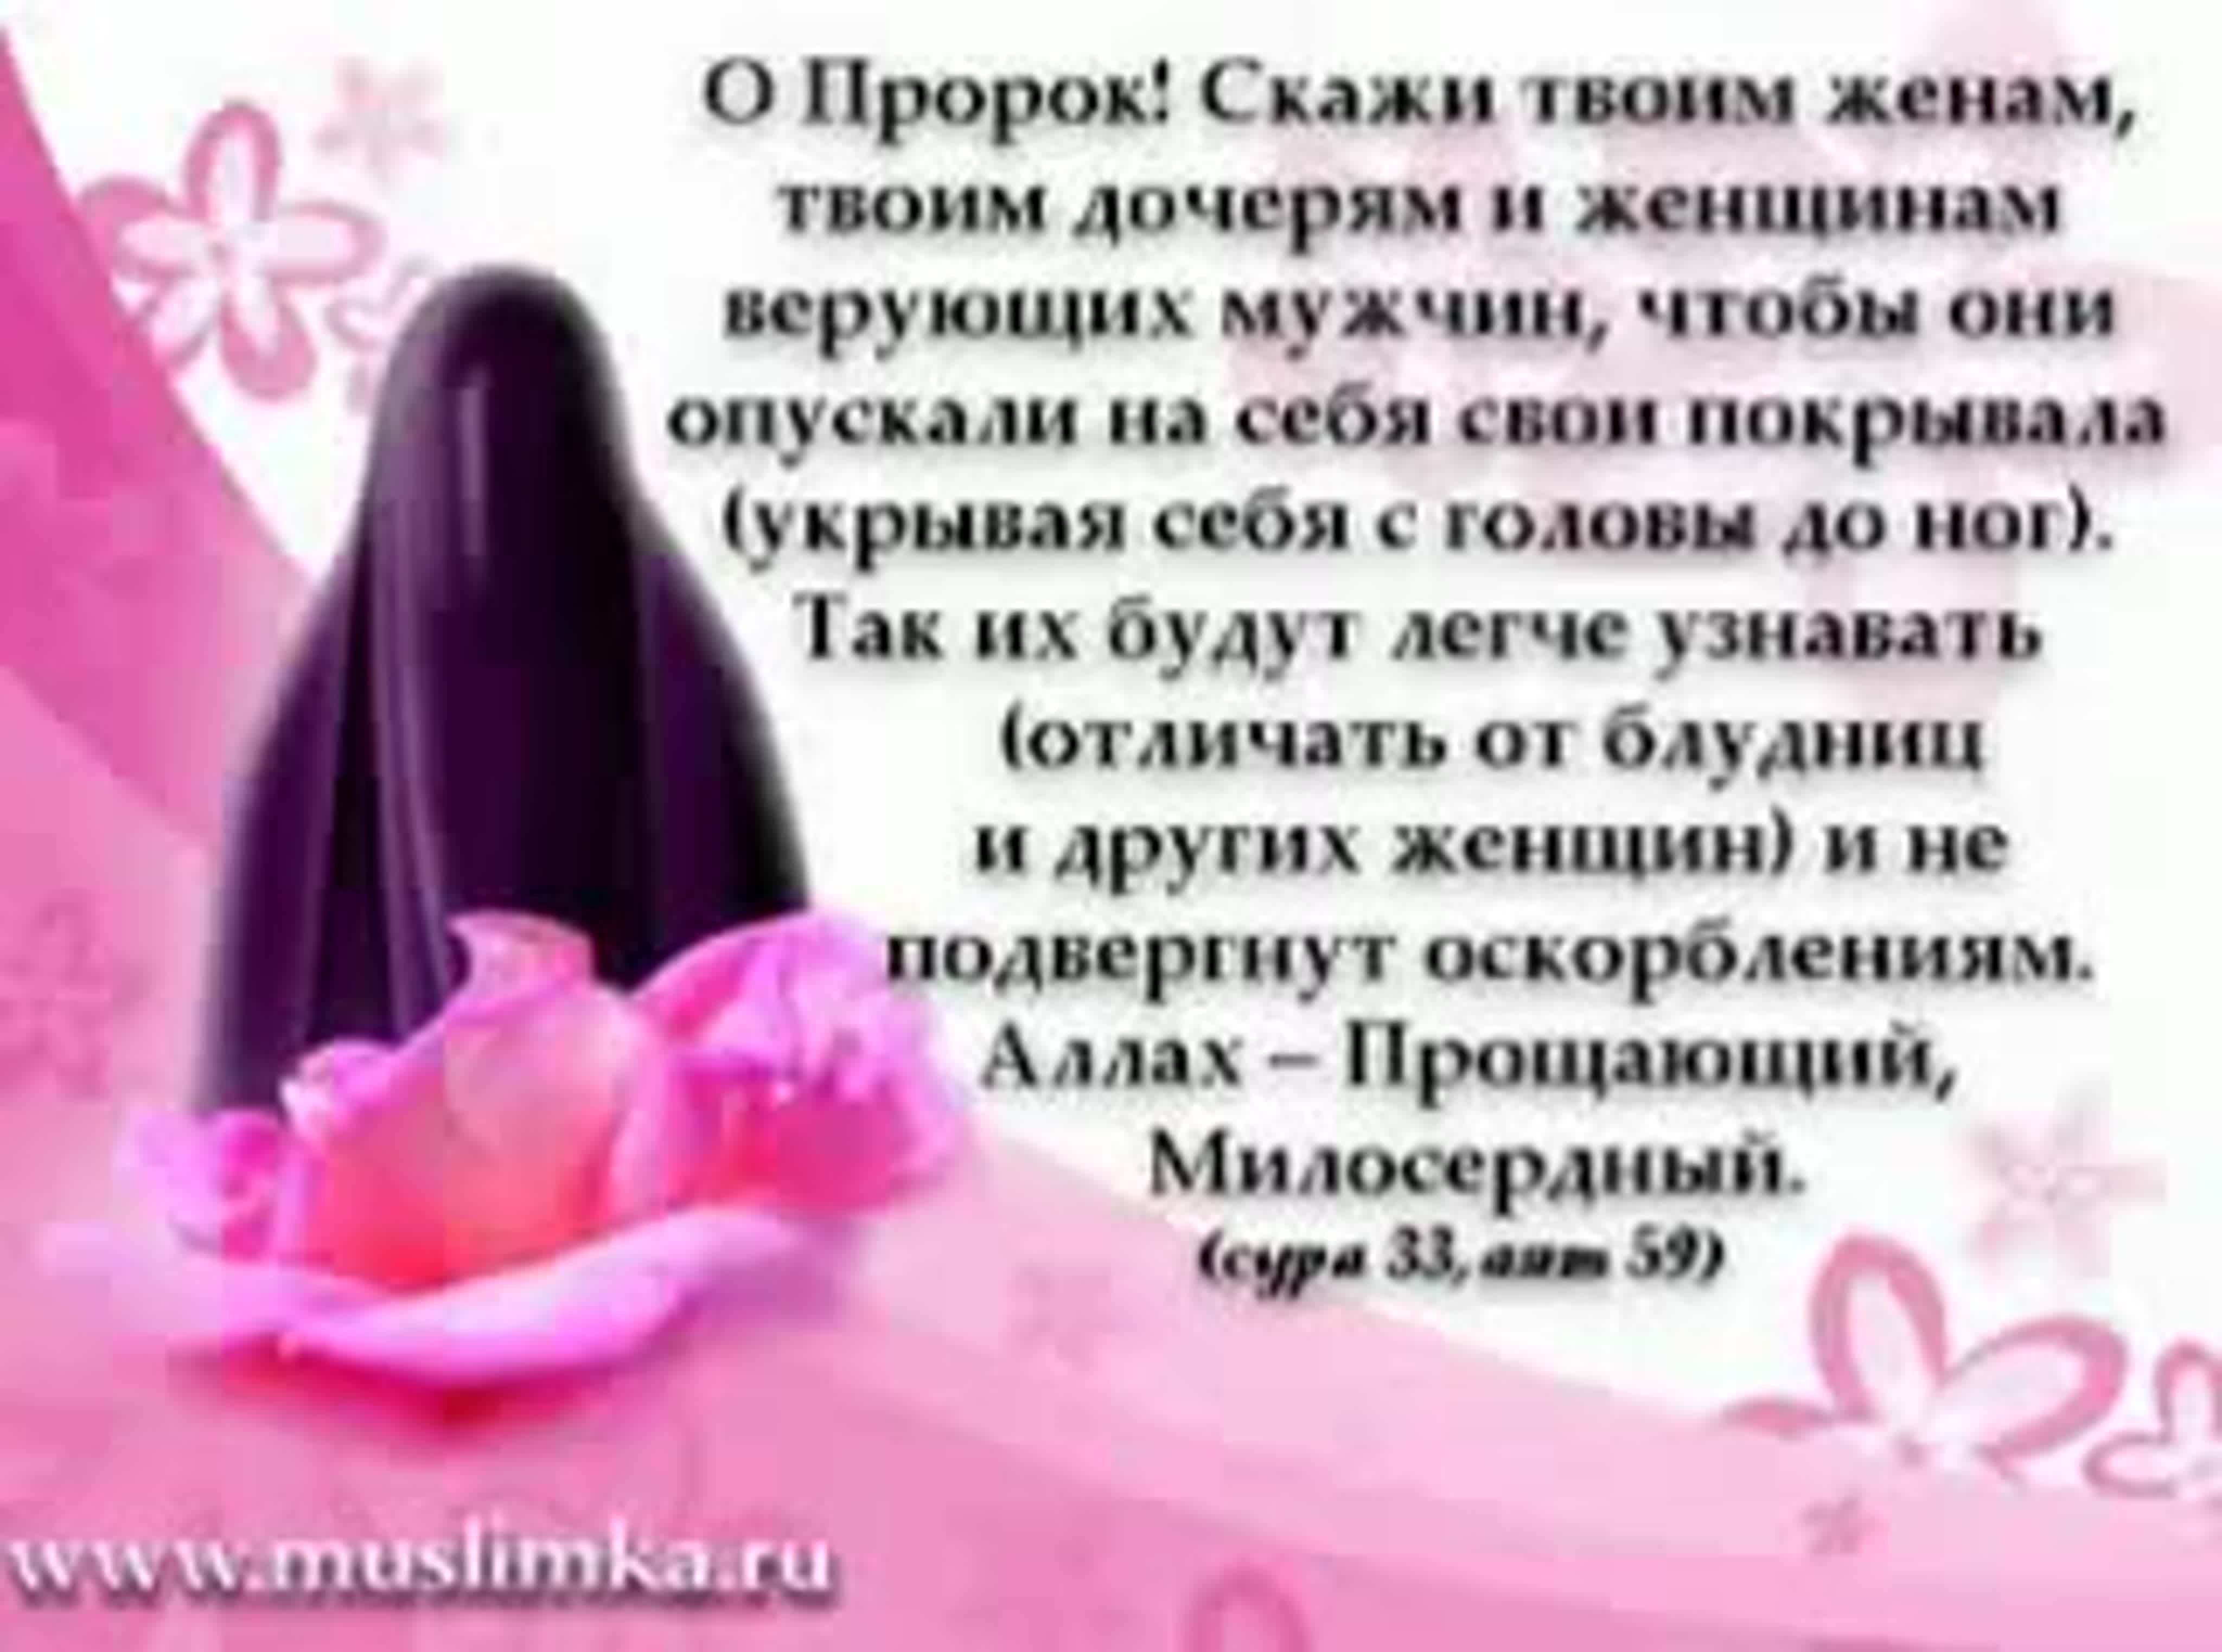 Чеченском языке поздравления сестре